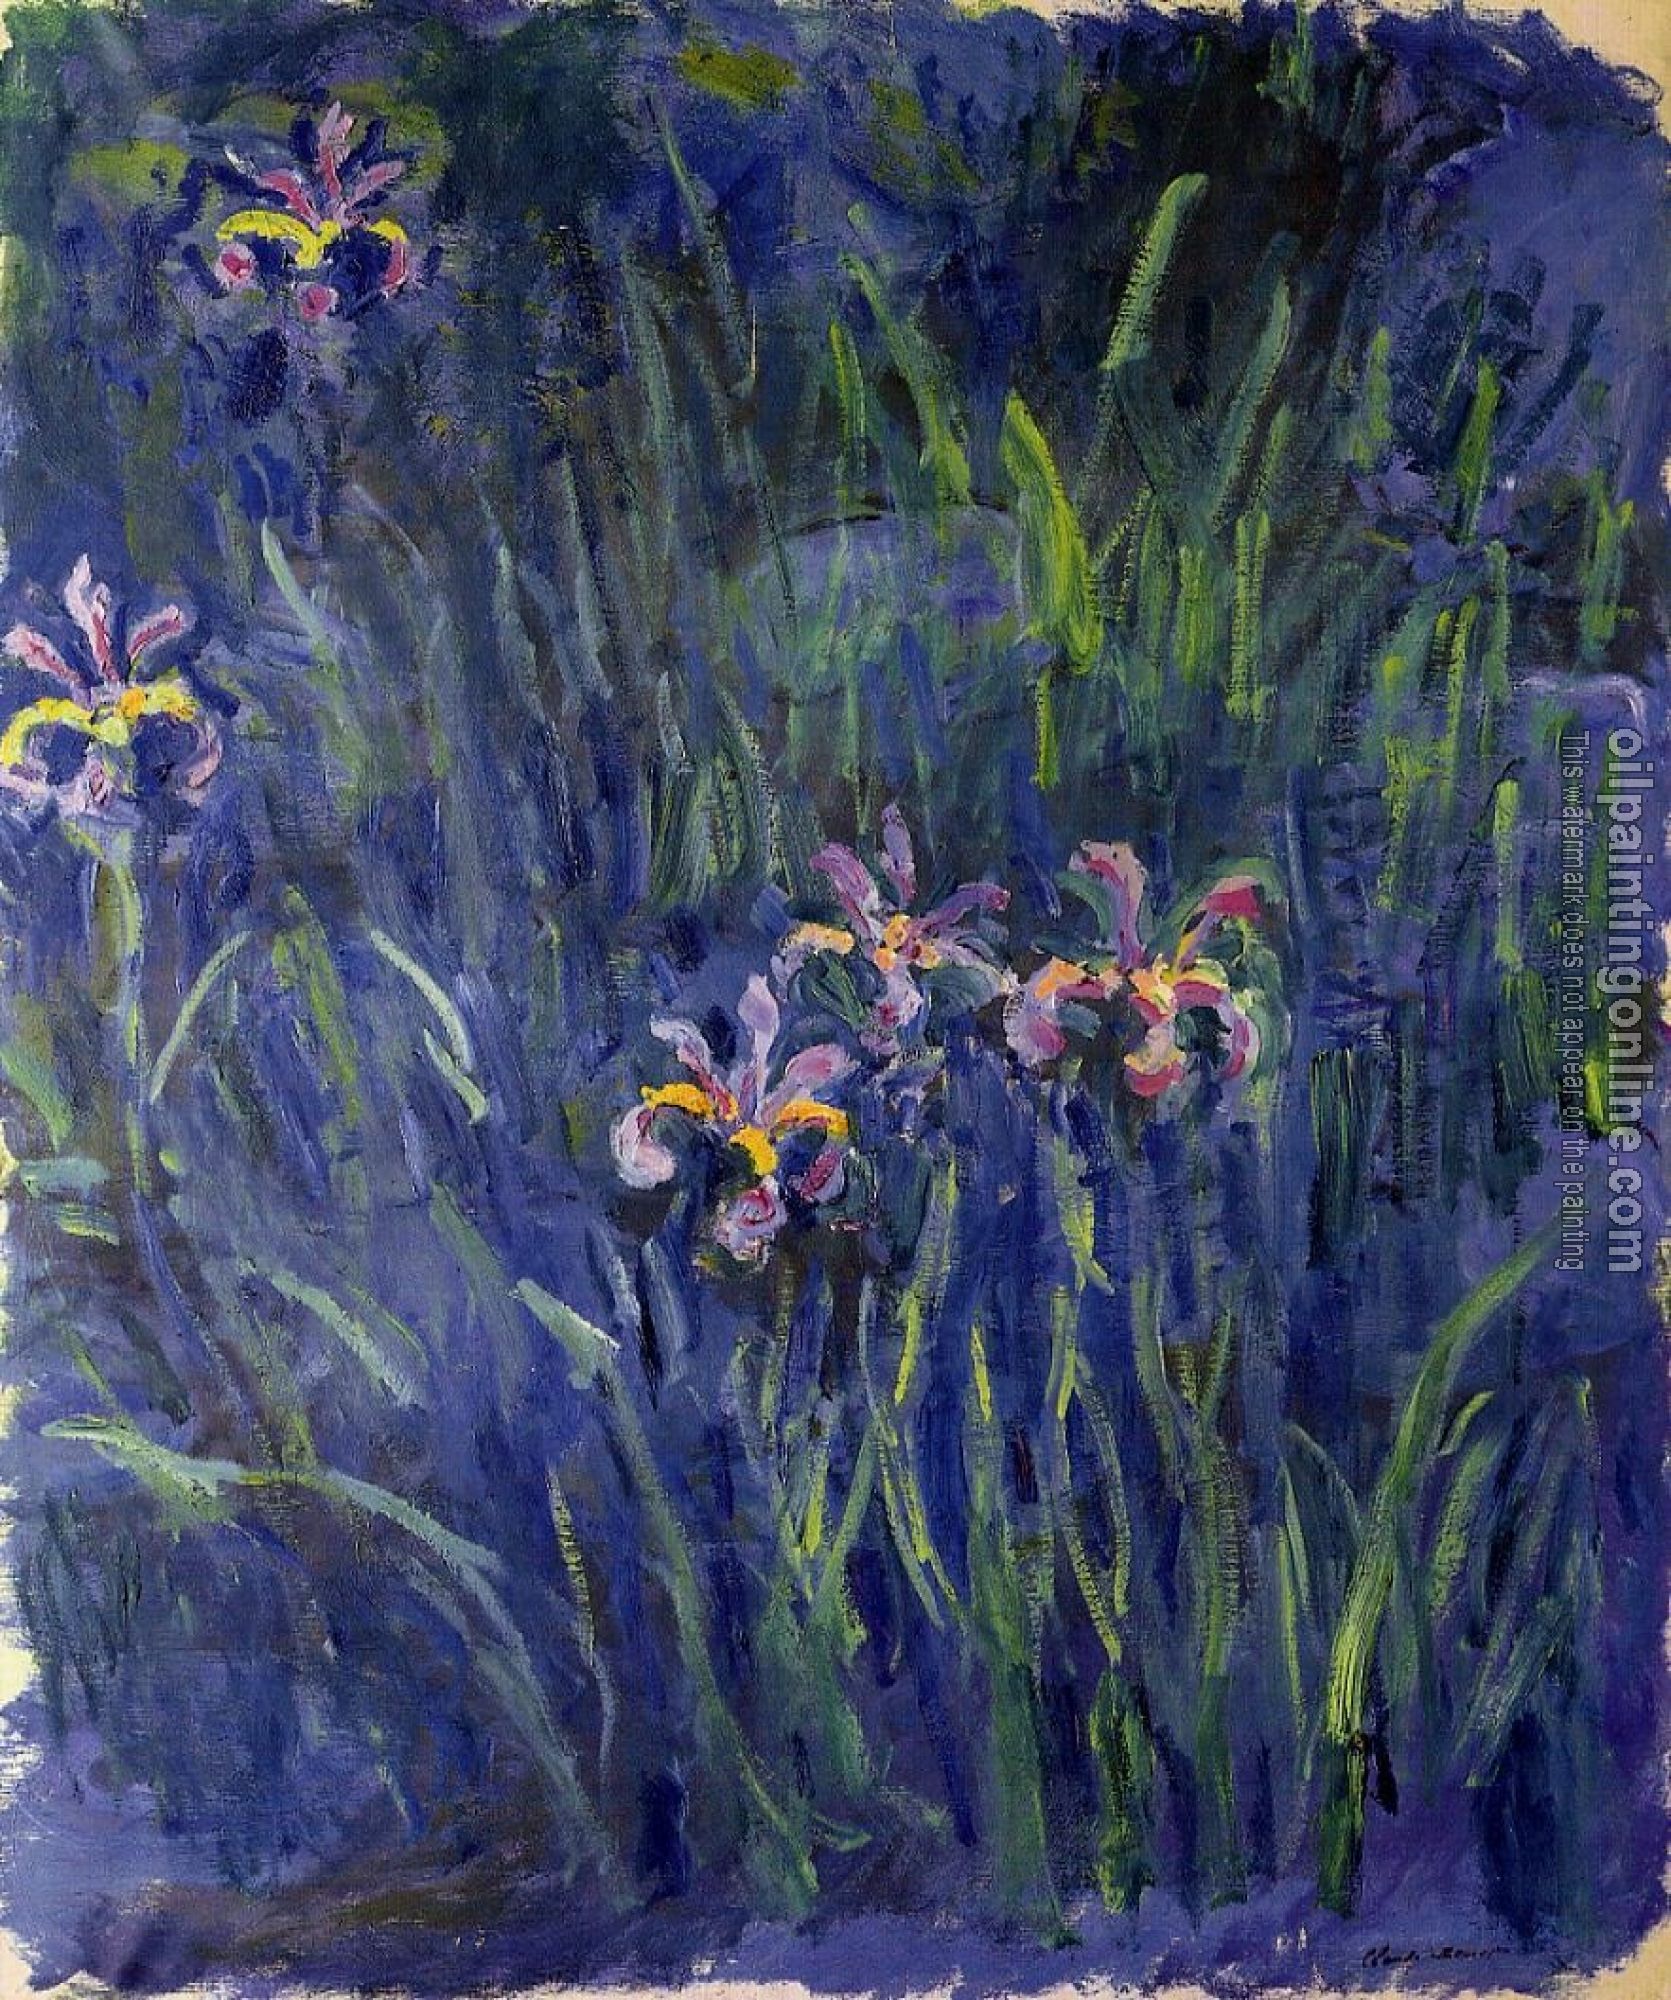 Monet, Claude Oscar - Irises